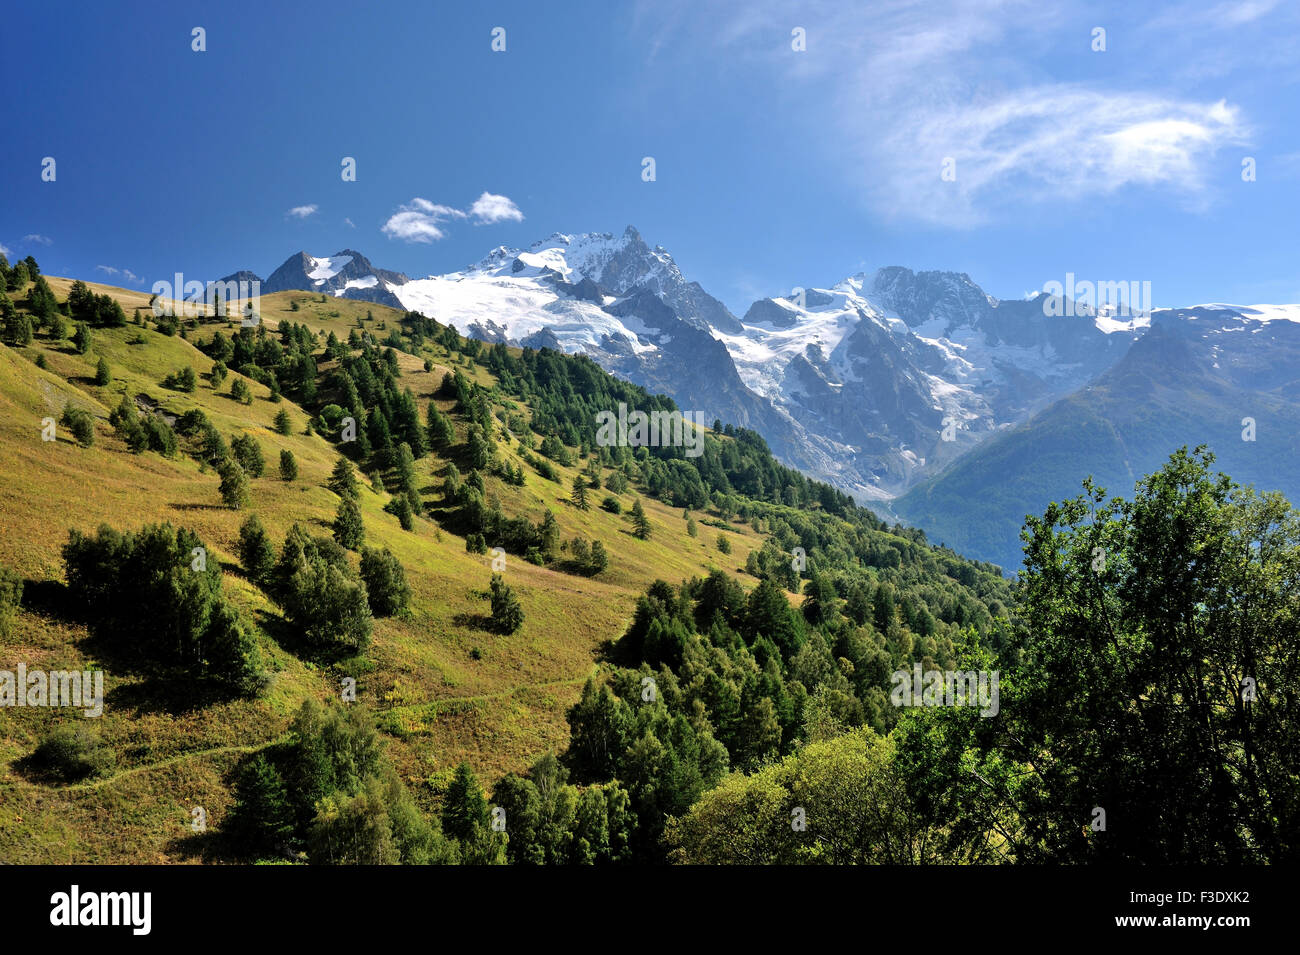 Il paesaggio alpino con il verde delle colline e montagne dalle vette innevate, sulle Alpi francesi, Francia Foto Stock